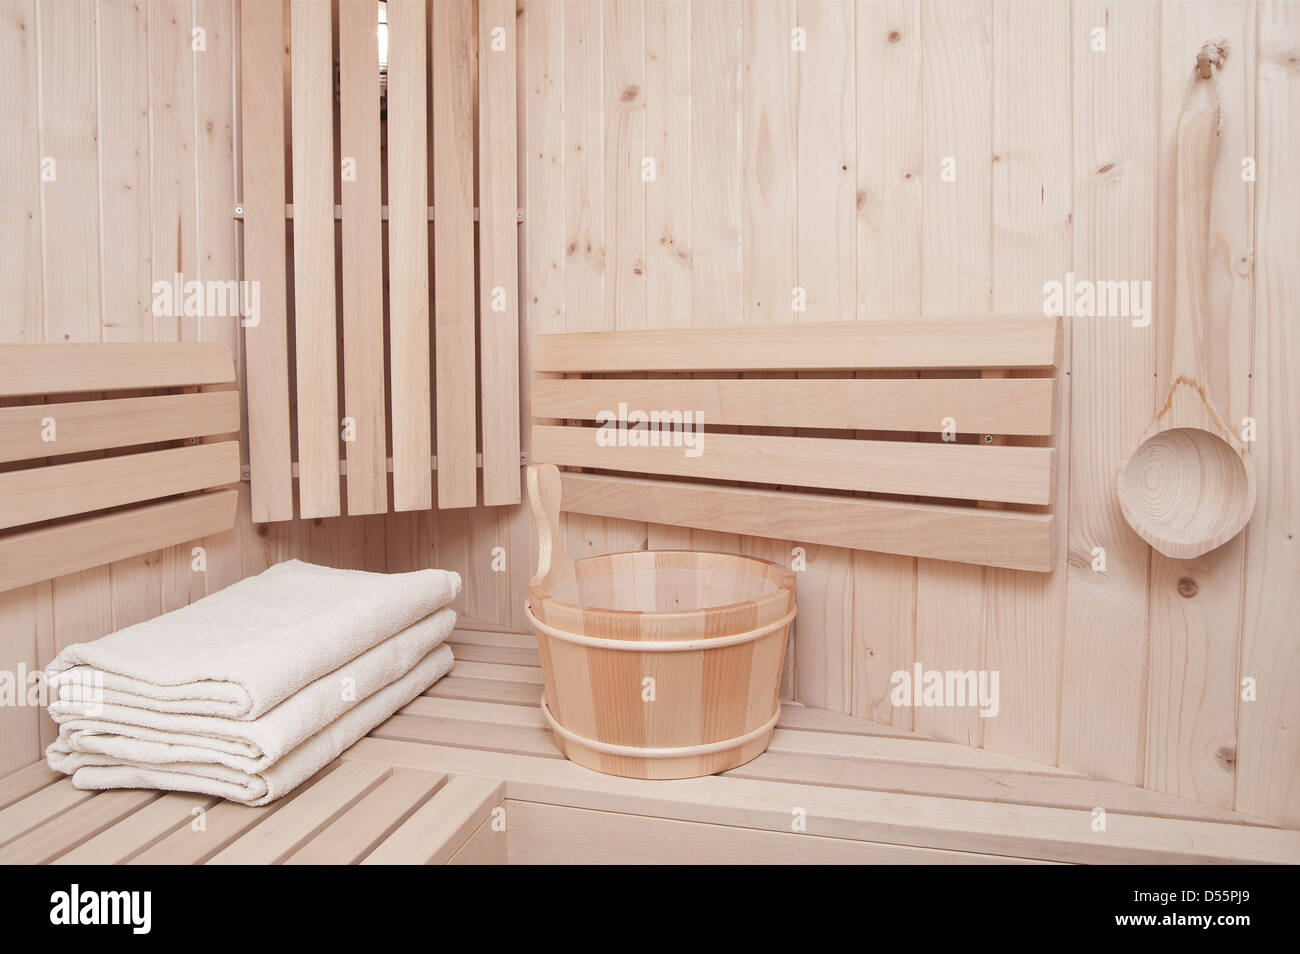 Una sauna finlandesa de dos alturas para pasar un buen y sudoroso